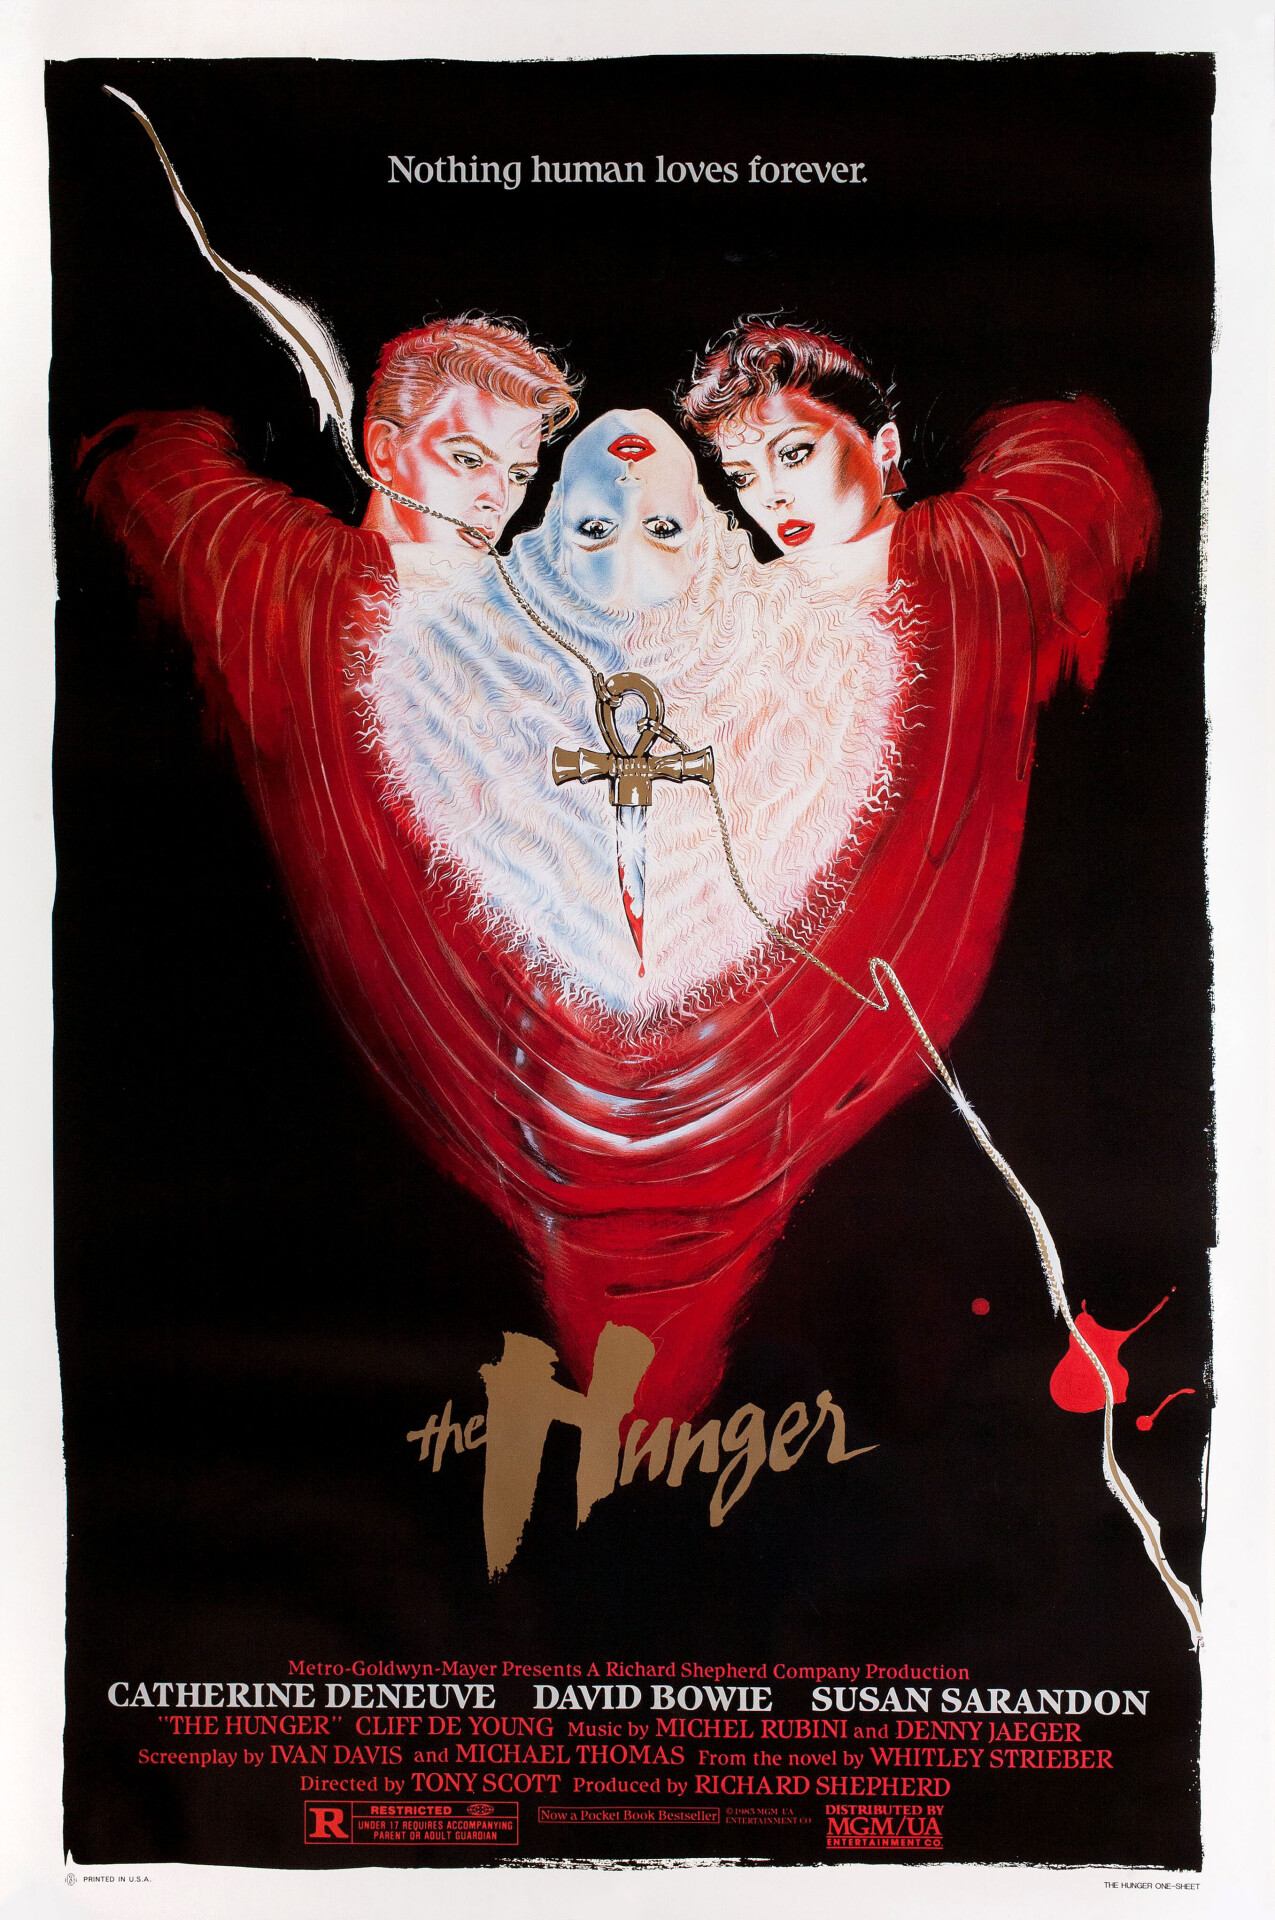 Голод (The Hunger, 1983), режиссёр Тони Скотт, американский постер к фильму (ужасы, 1983 год)